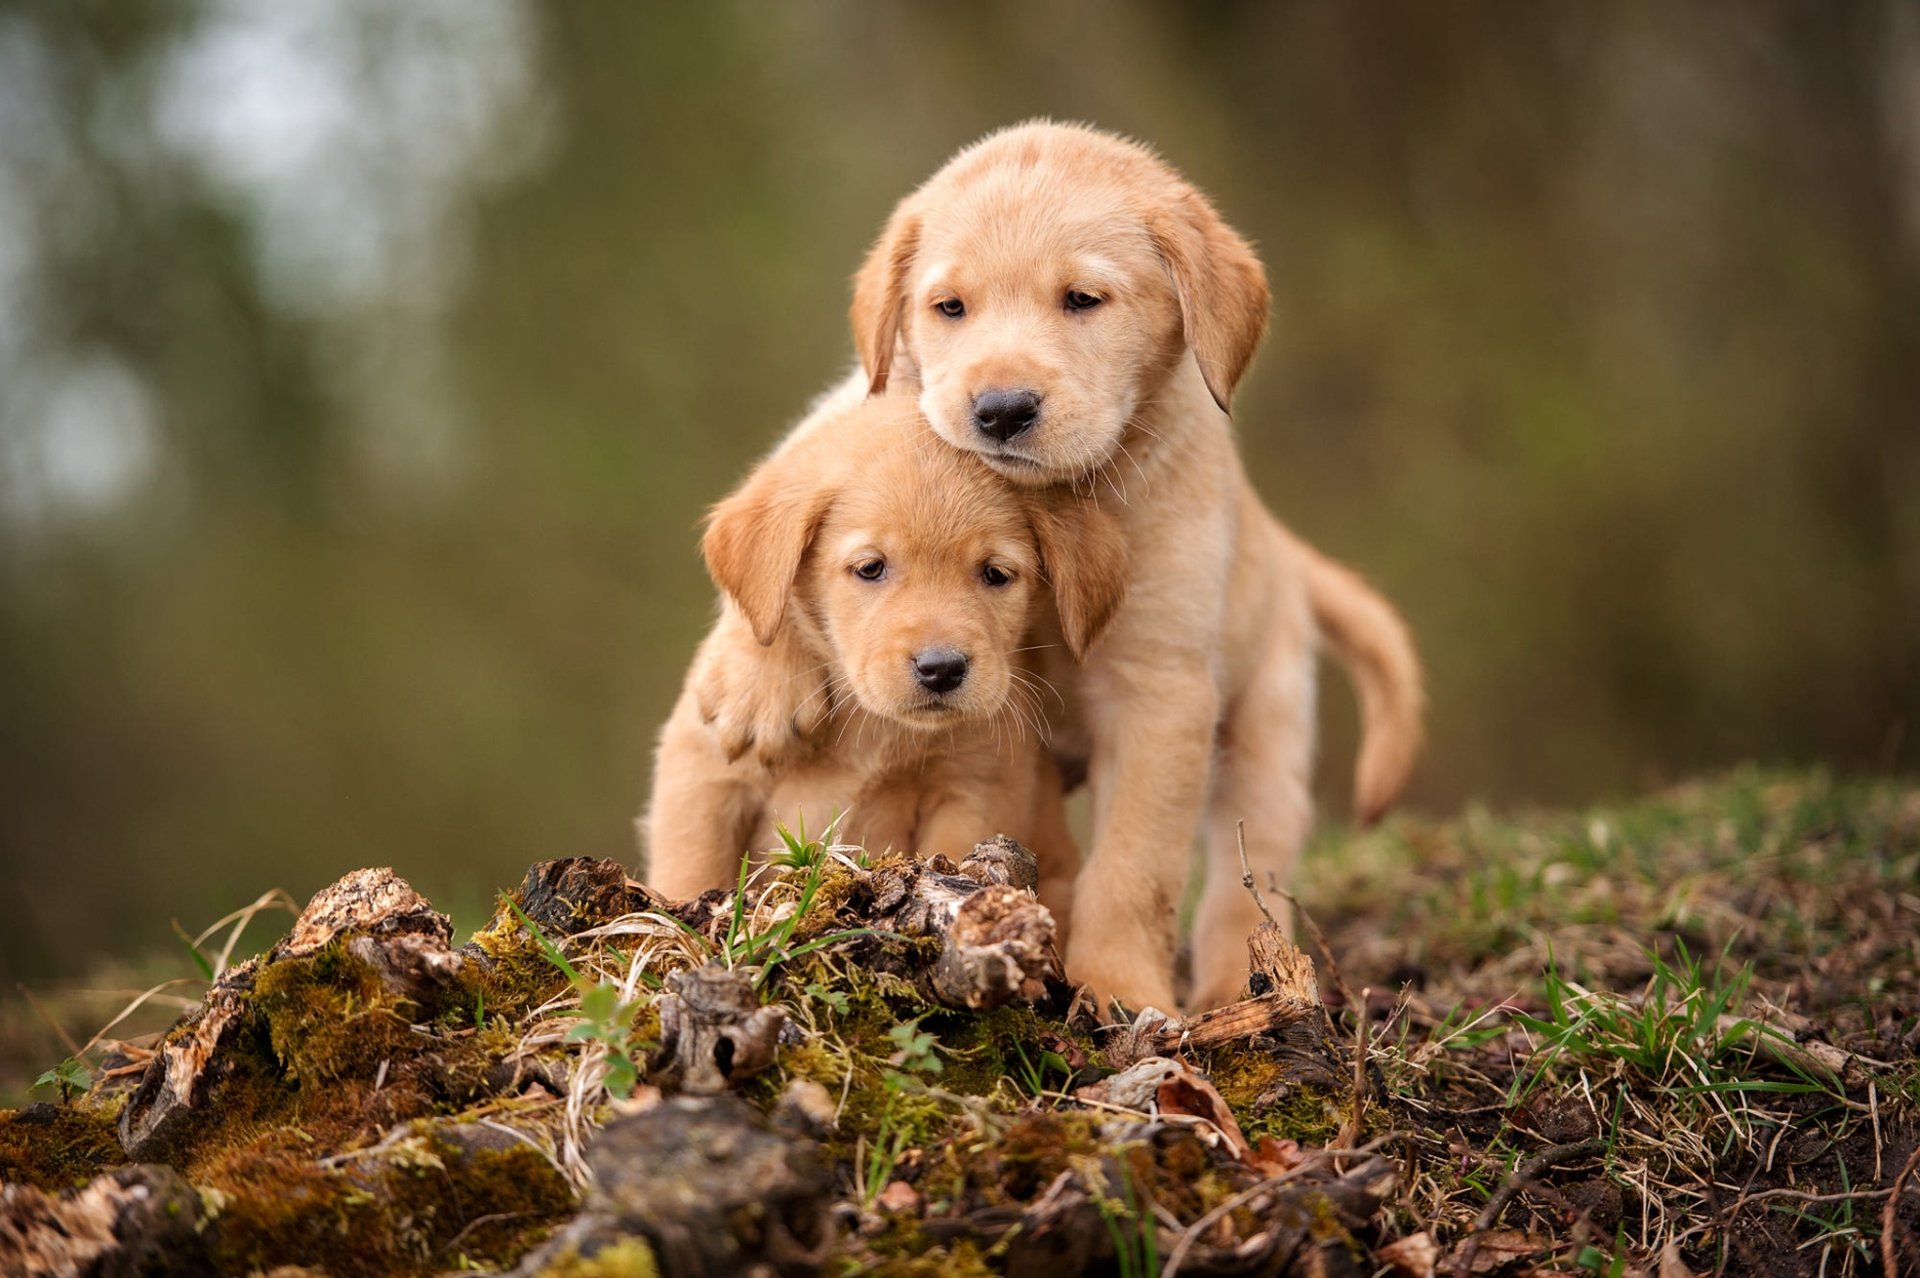 Adorable golden retriever puppy as a cute baby animal in high-definition desktop wallpaper.